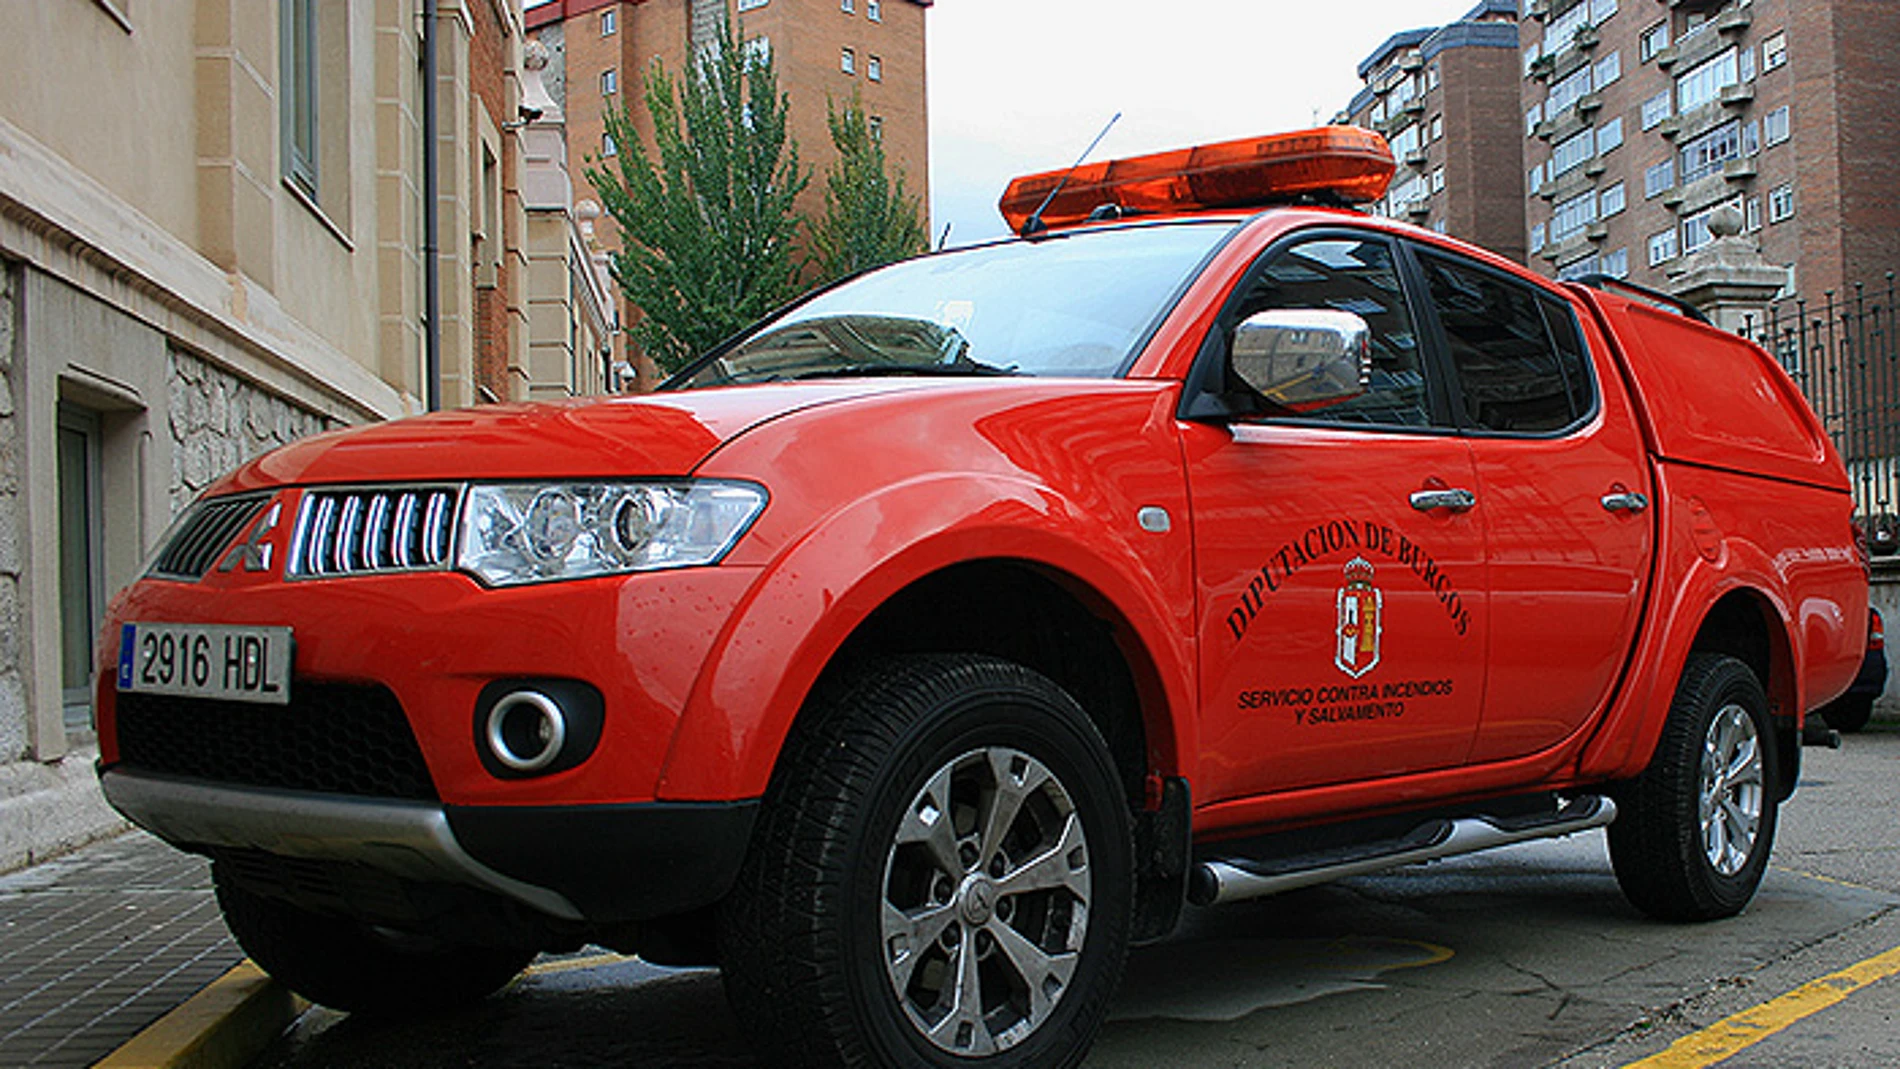 Vehículo de la Guardia Civil (COS) de Burgos